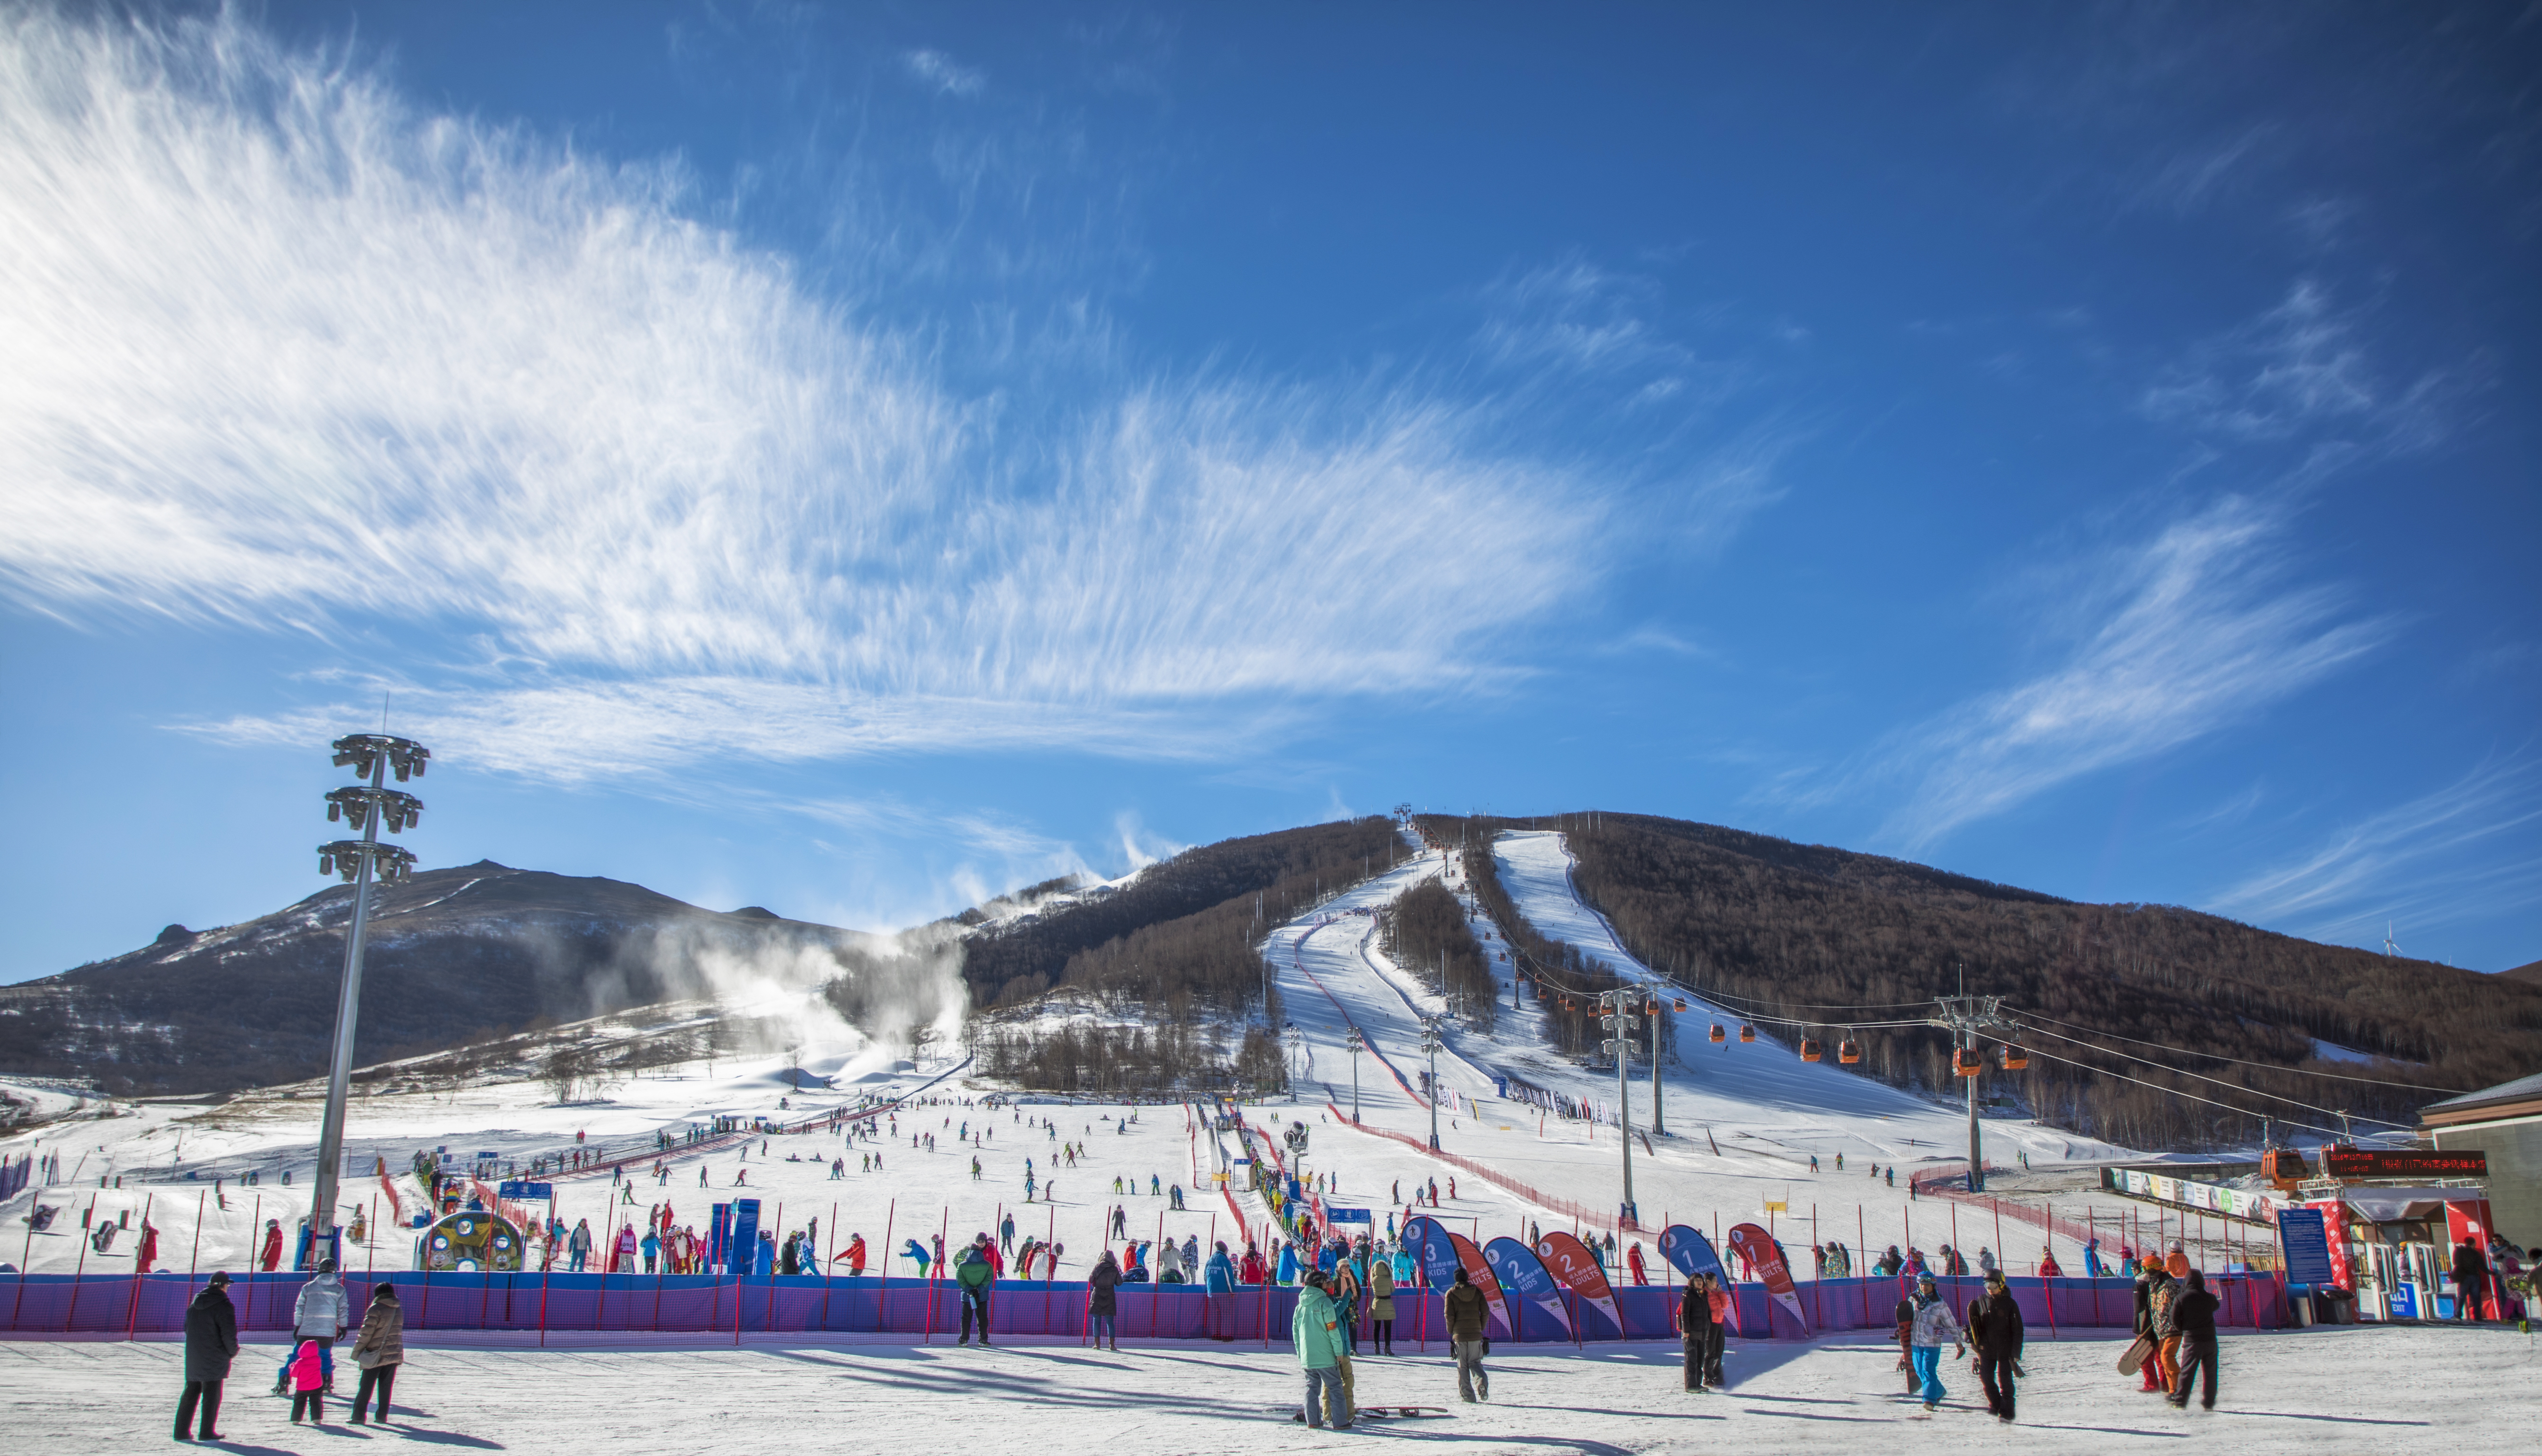 游玩时长:约4小时 沁园春滑雪场引进了国际先进的专业雪道压雪机,造雪